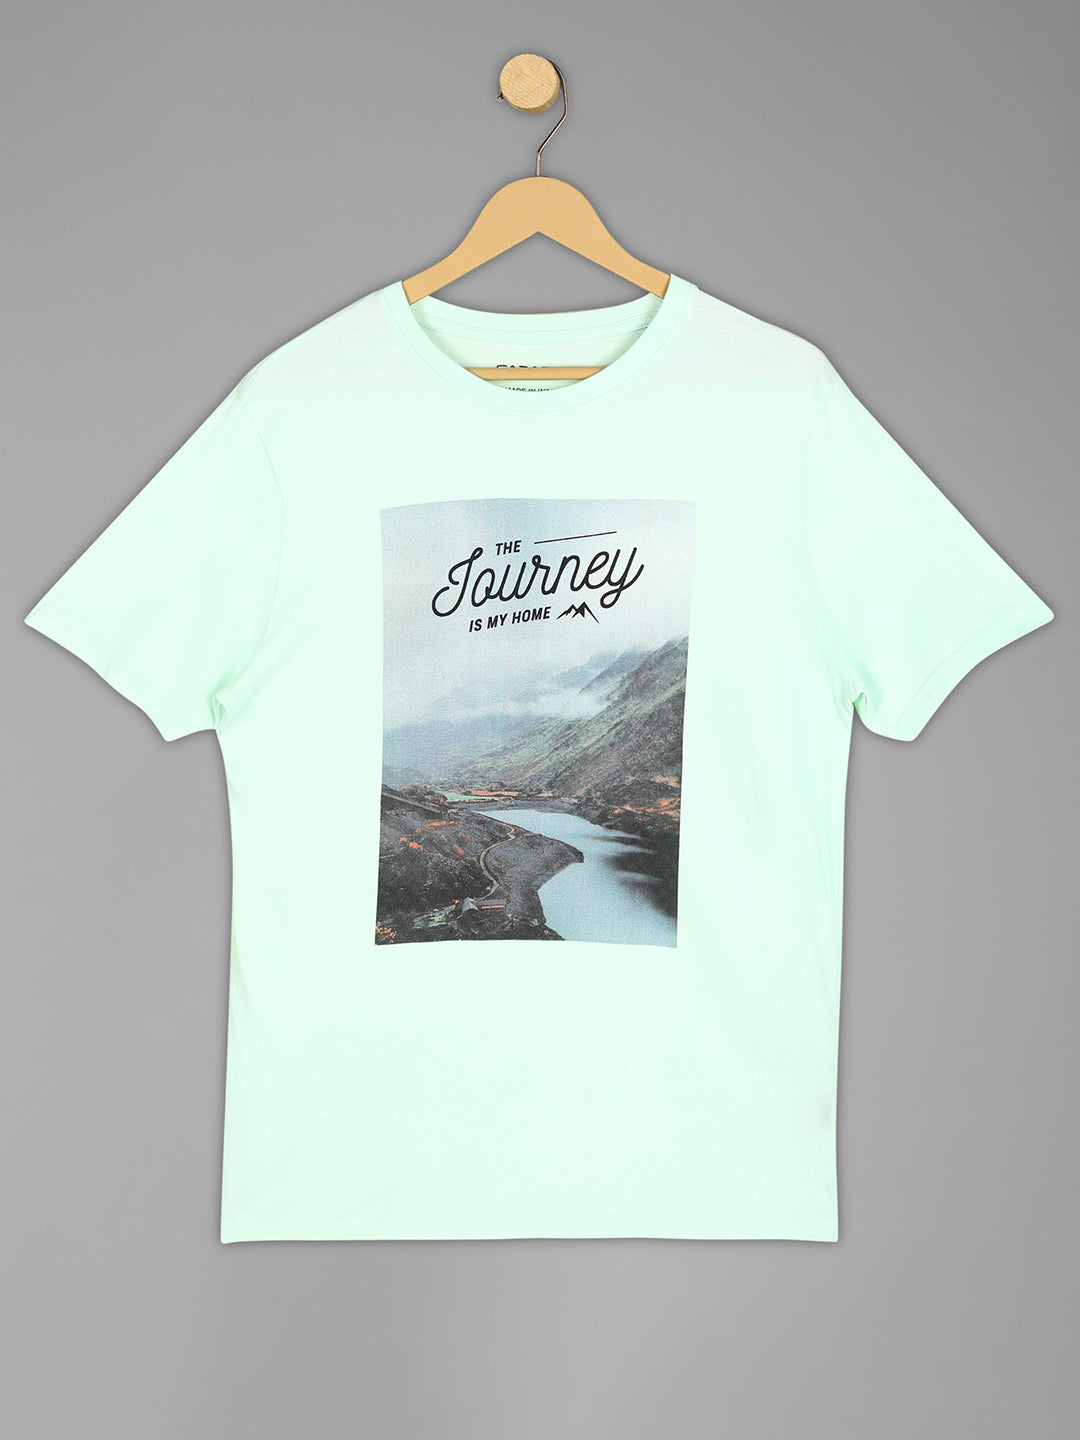 John Valley - Graphic Print Men's Tshirt - Aqua Green